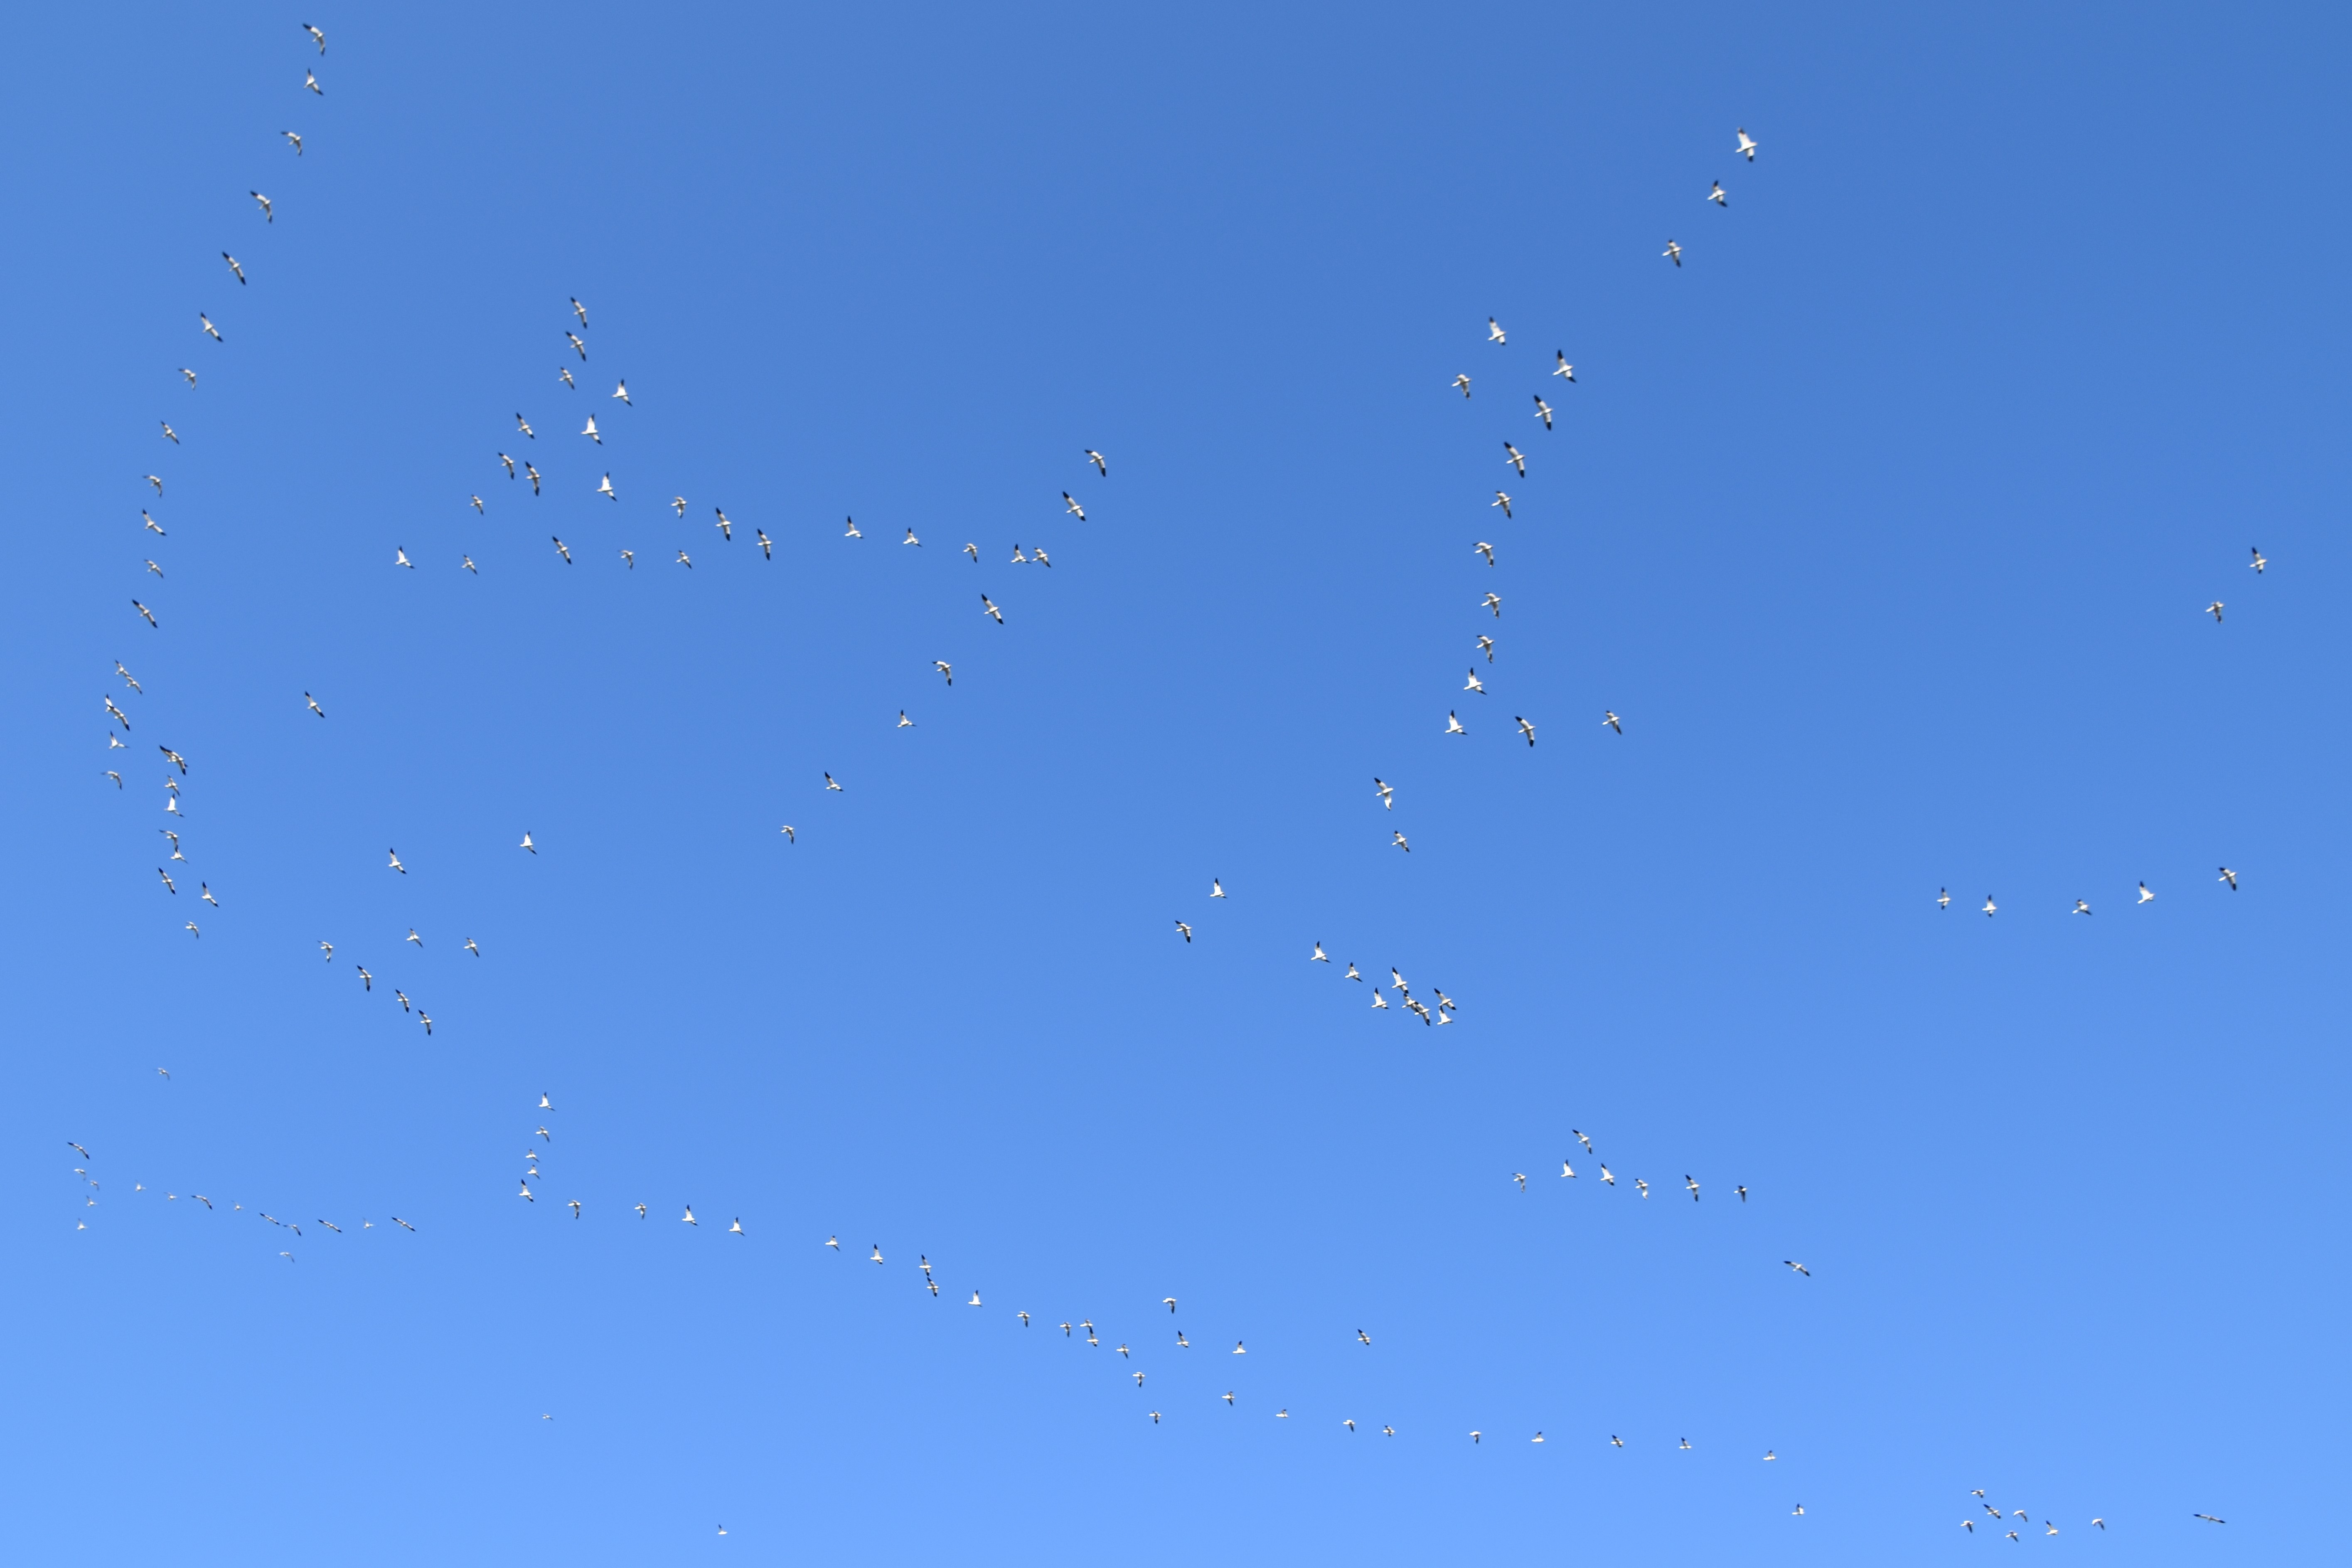 Runes in the sky